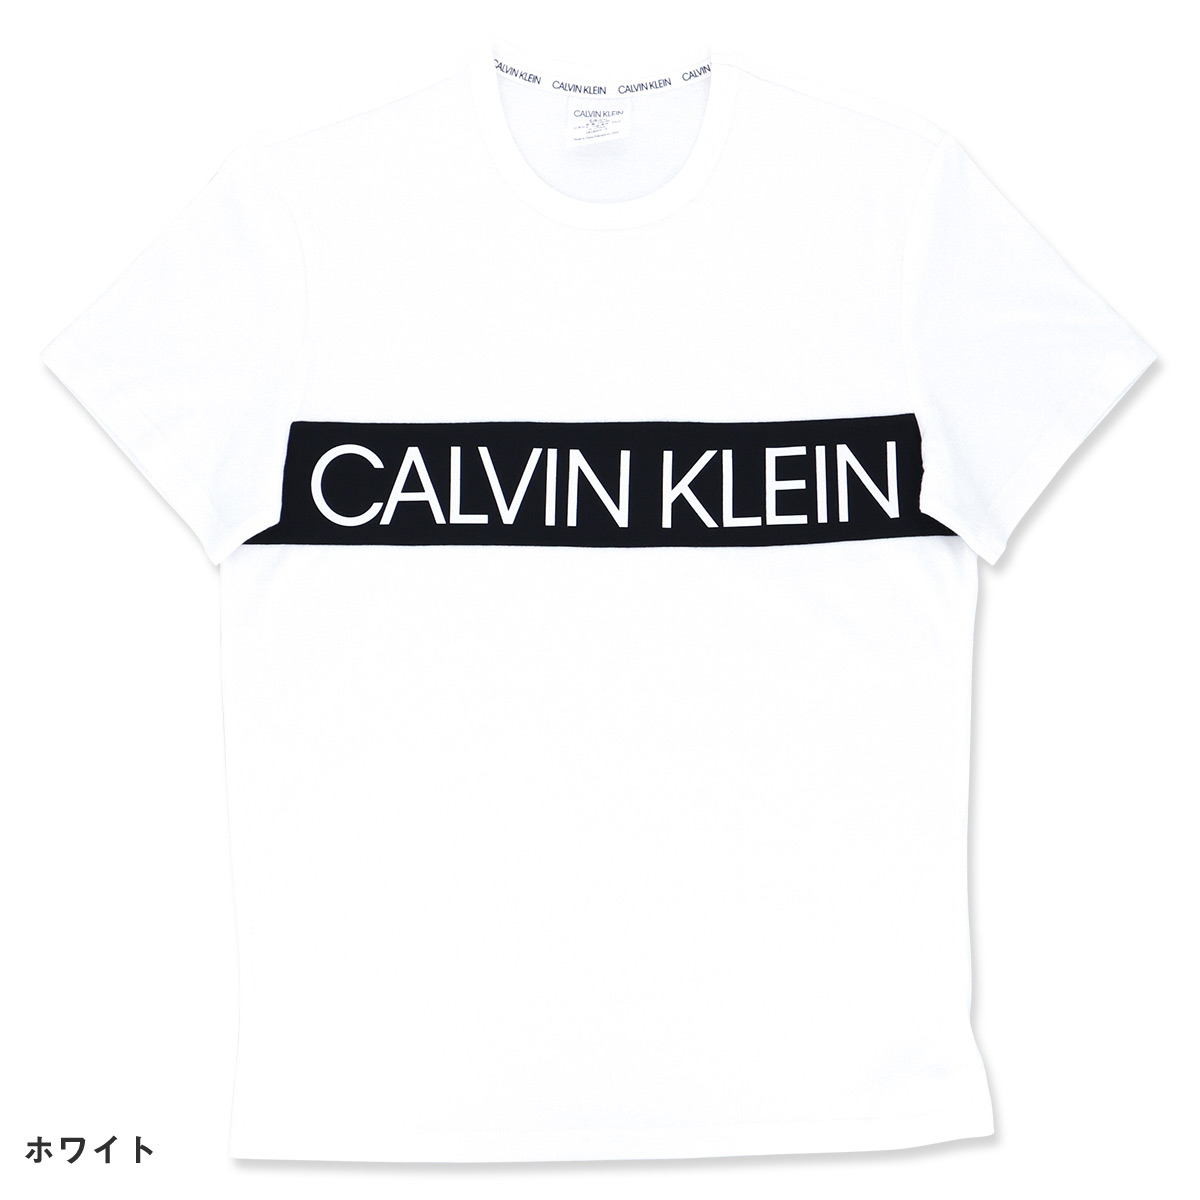 calvin klein statement 1981 t shirt